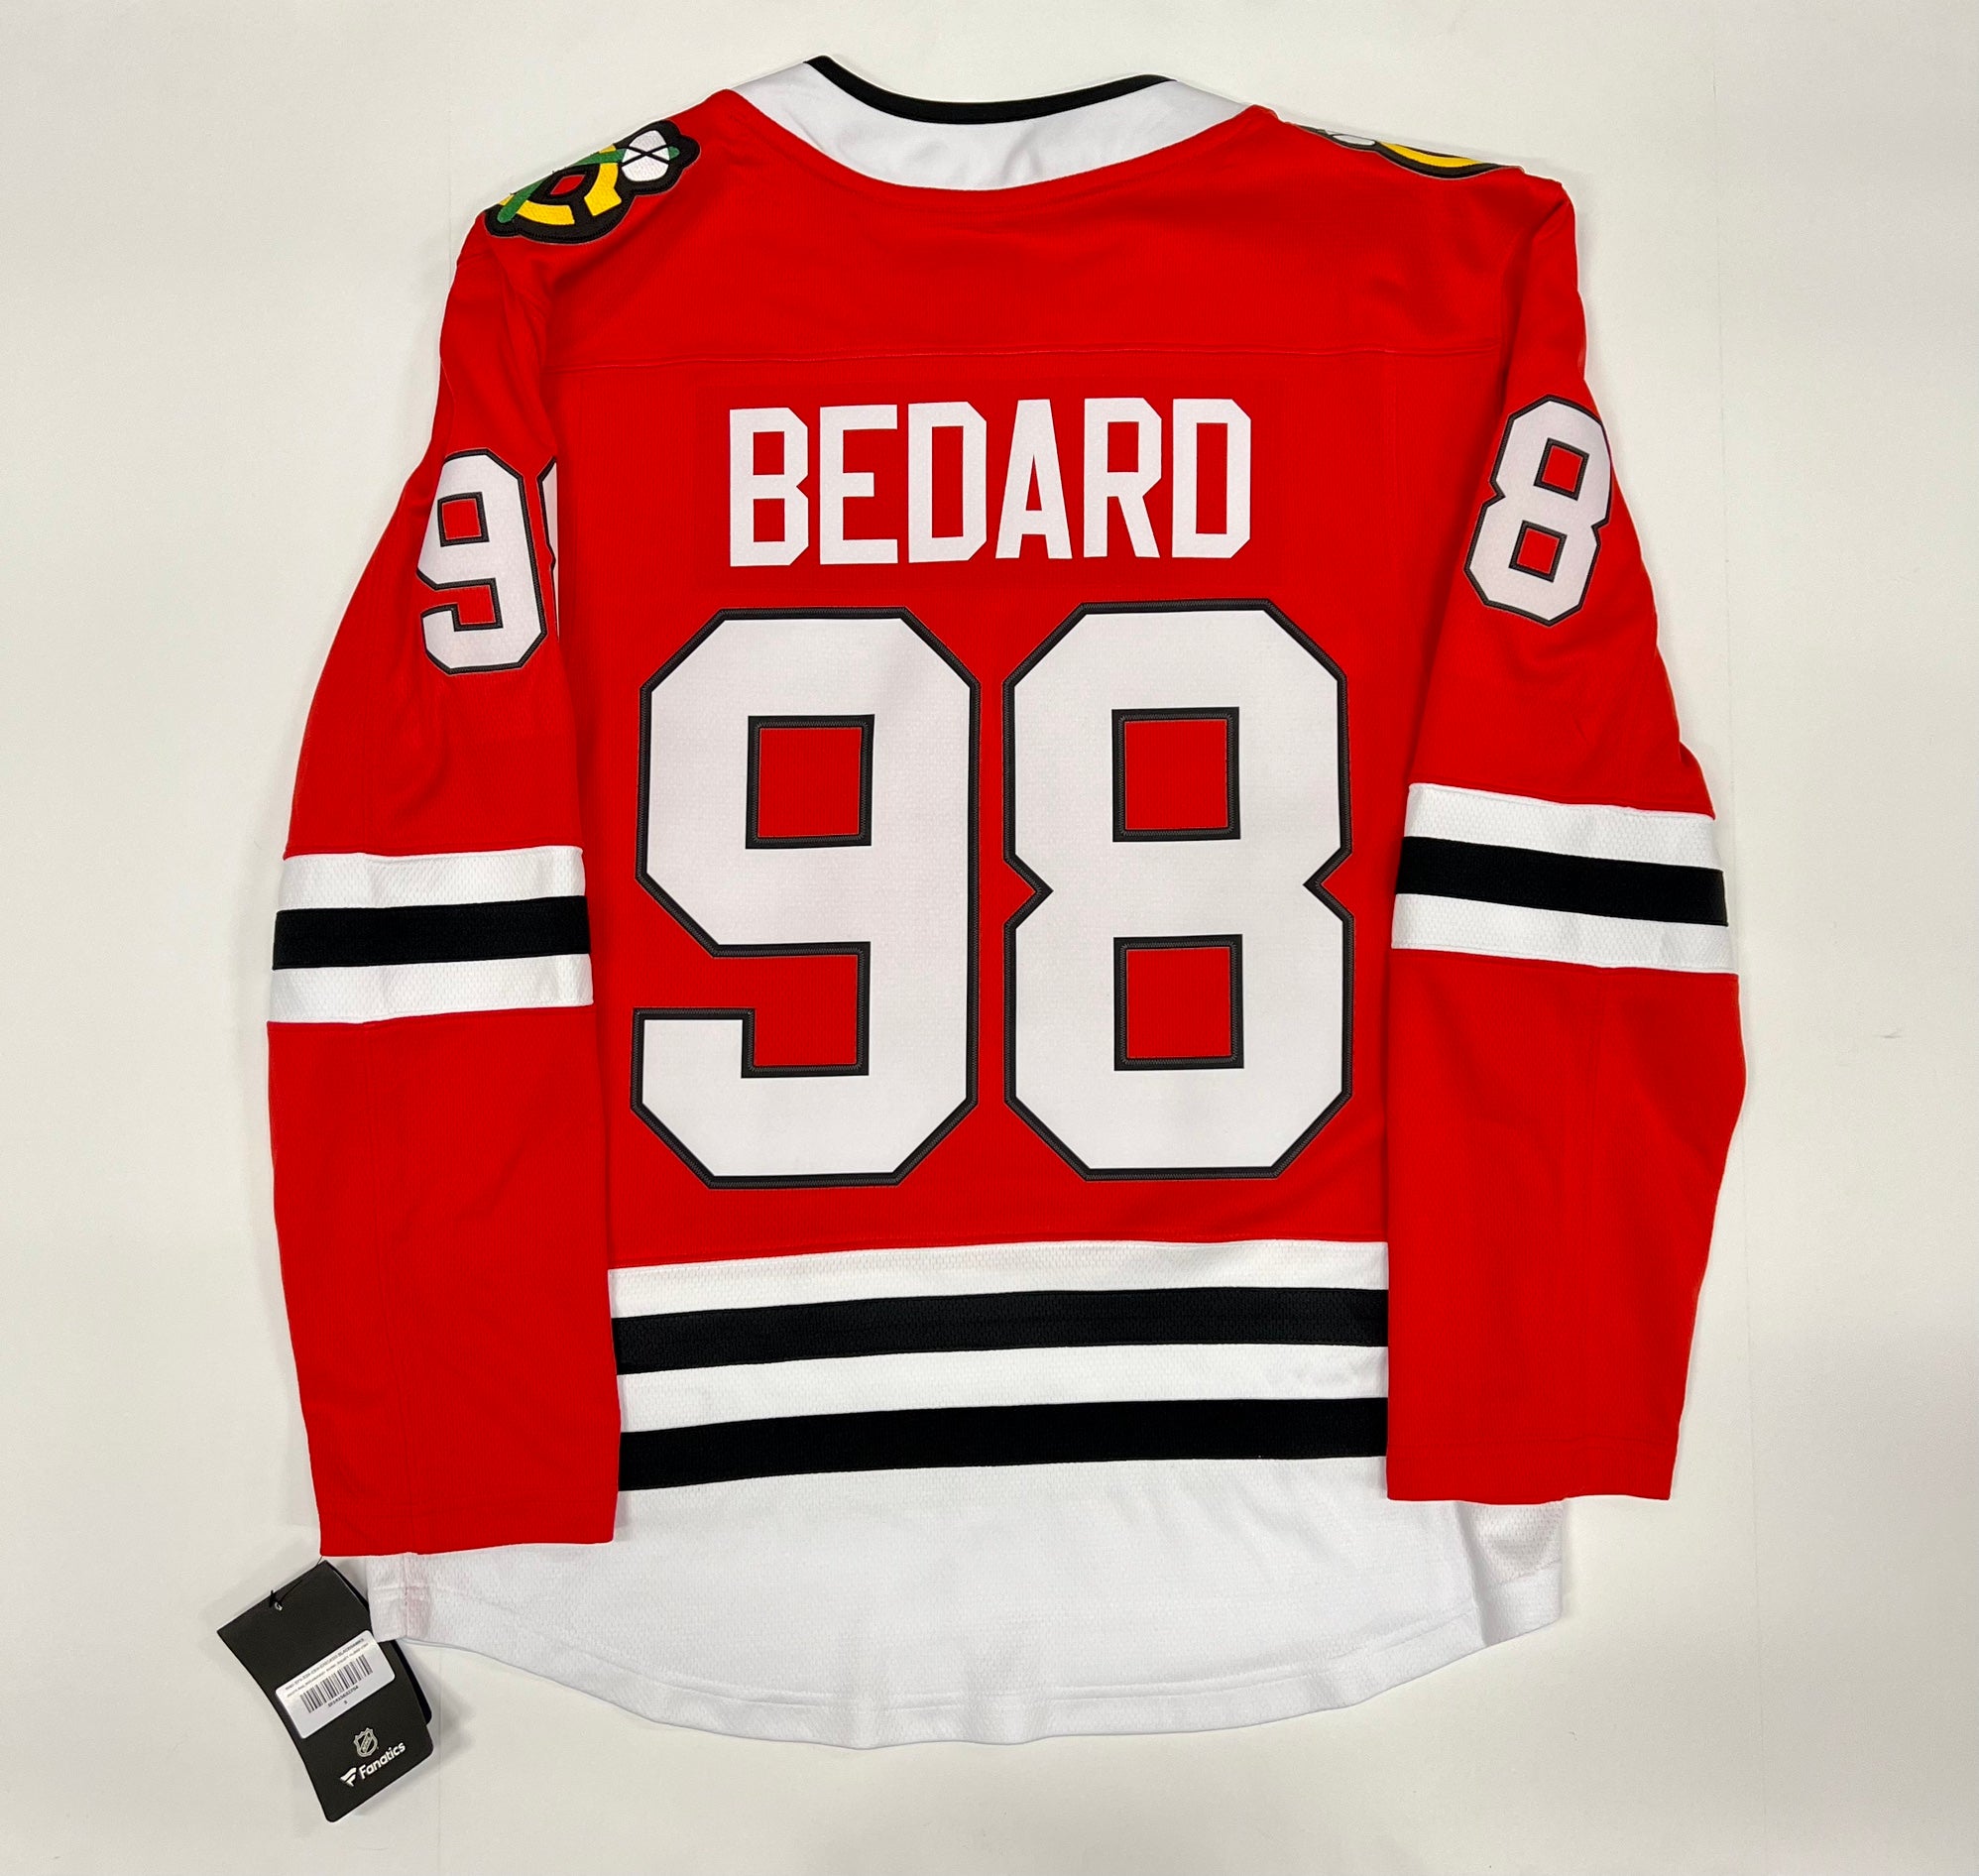 Connor Bedard Chicago Blackhawks Fanatics Replica NHL Jersey